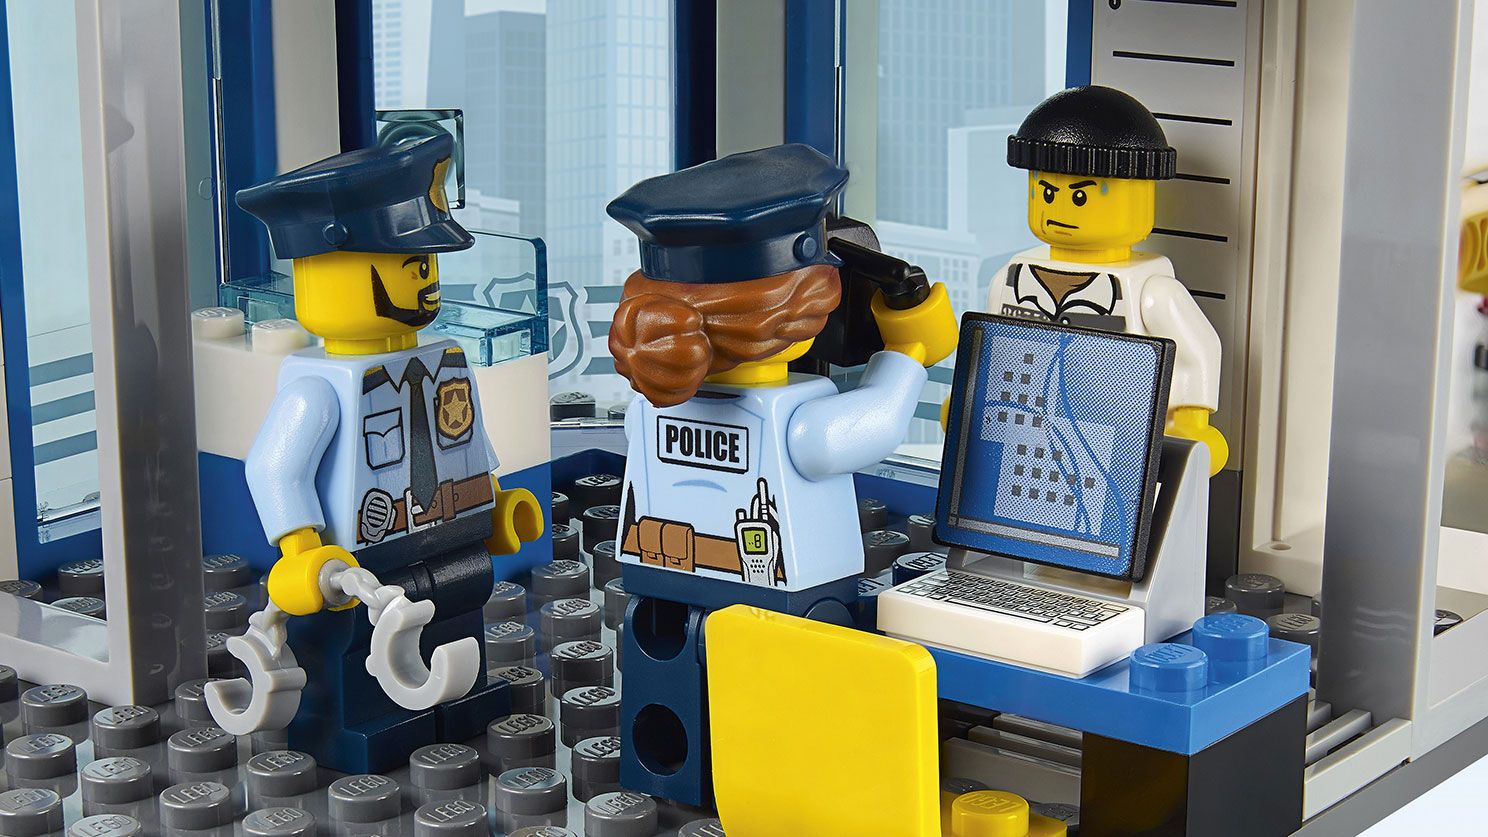 LEGO City 60141 Polizeiwache LEGO_60141_WEB_SEC02_1488.jpg